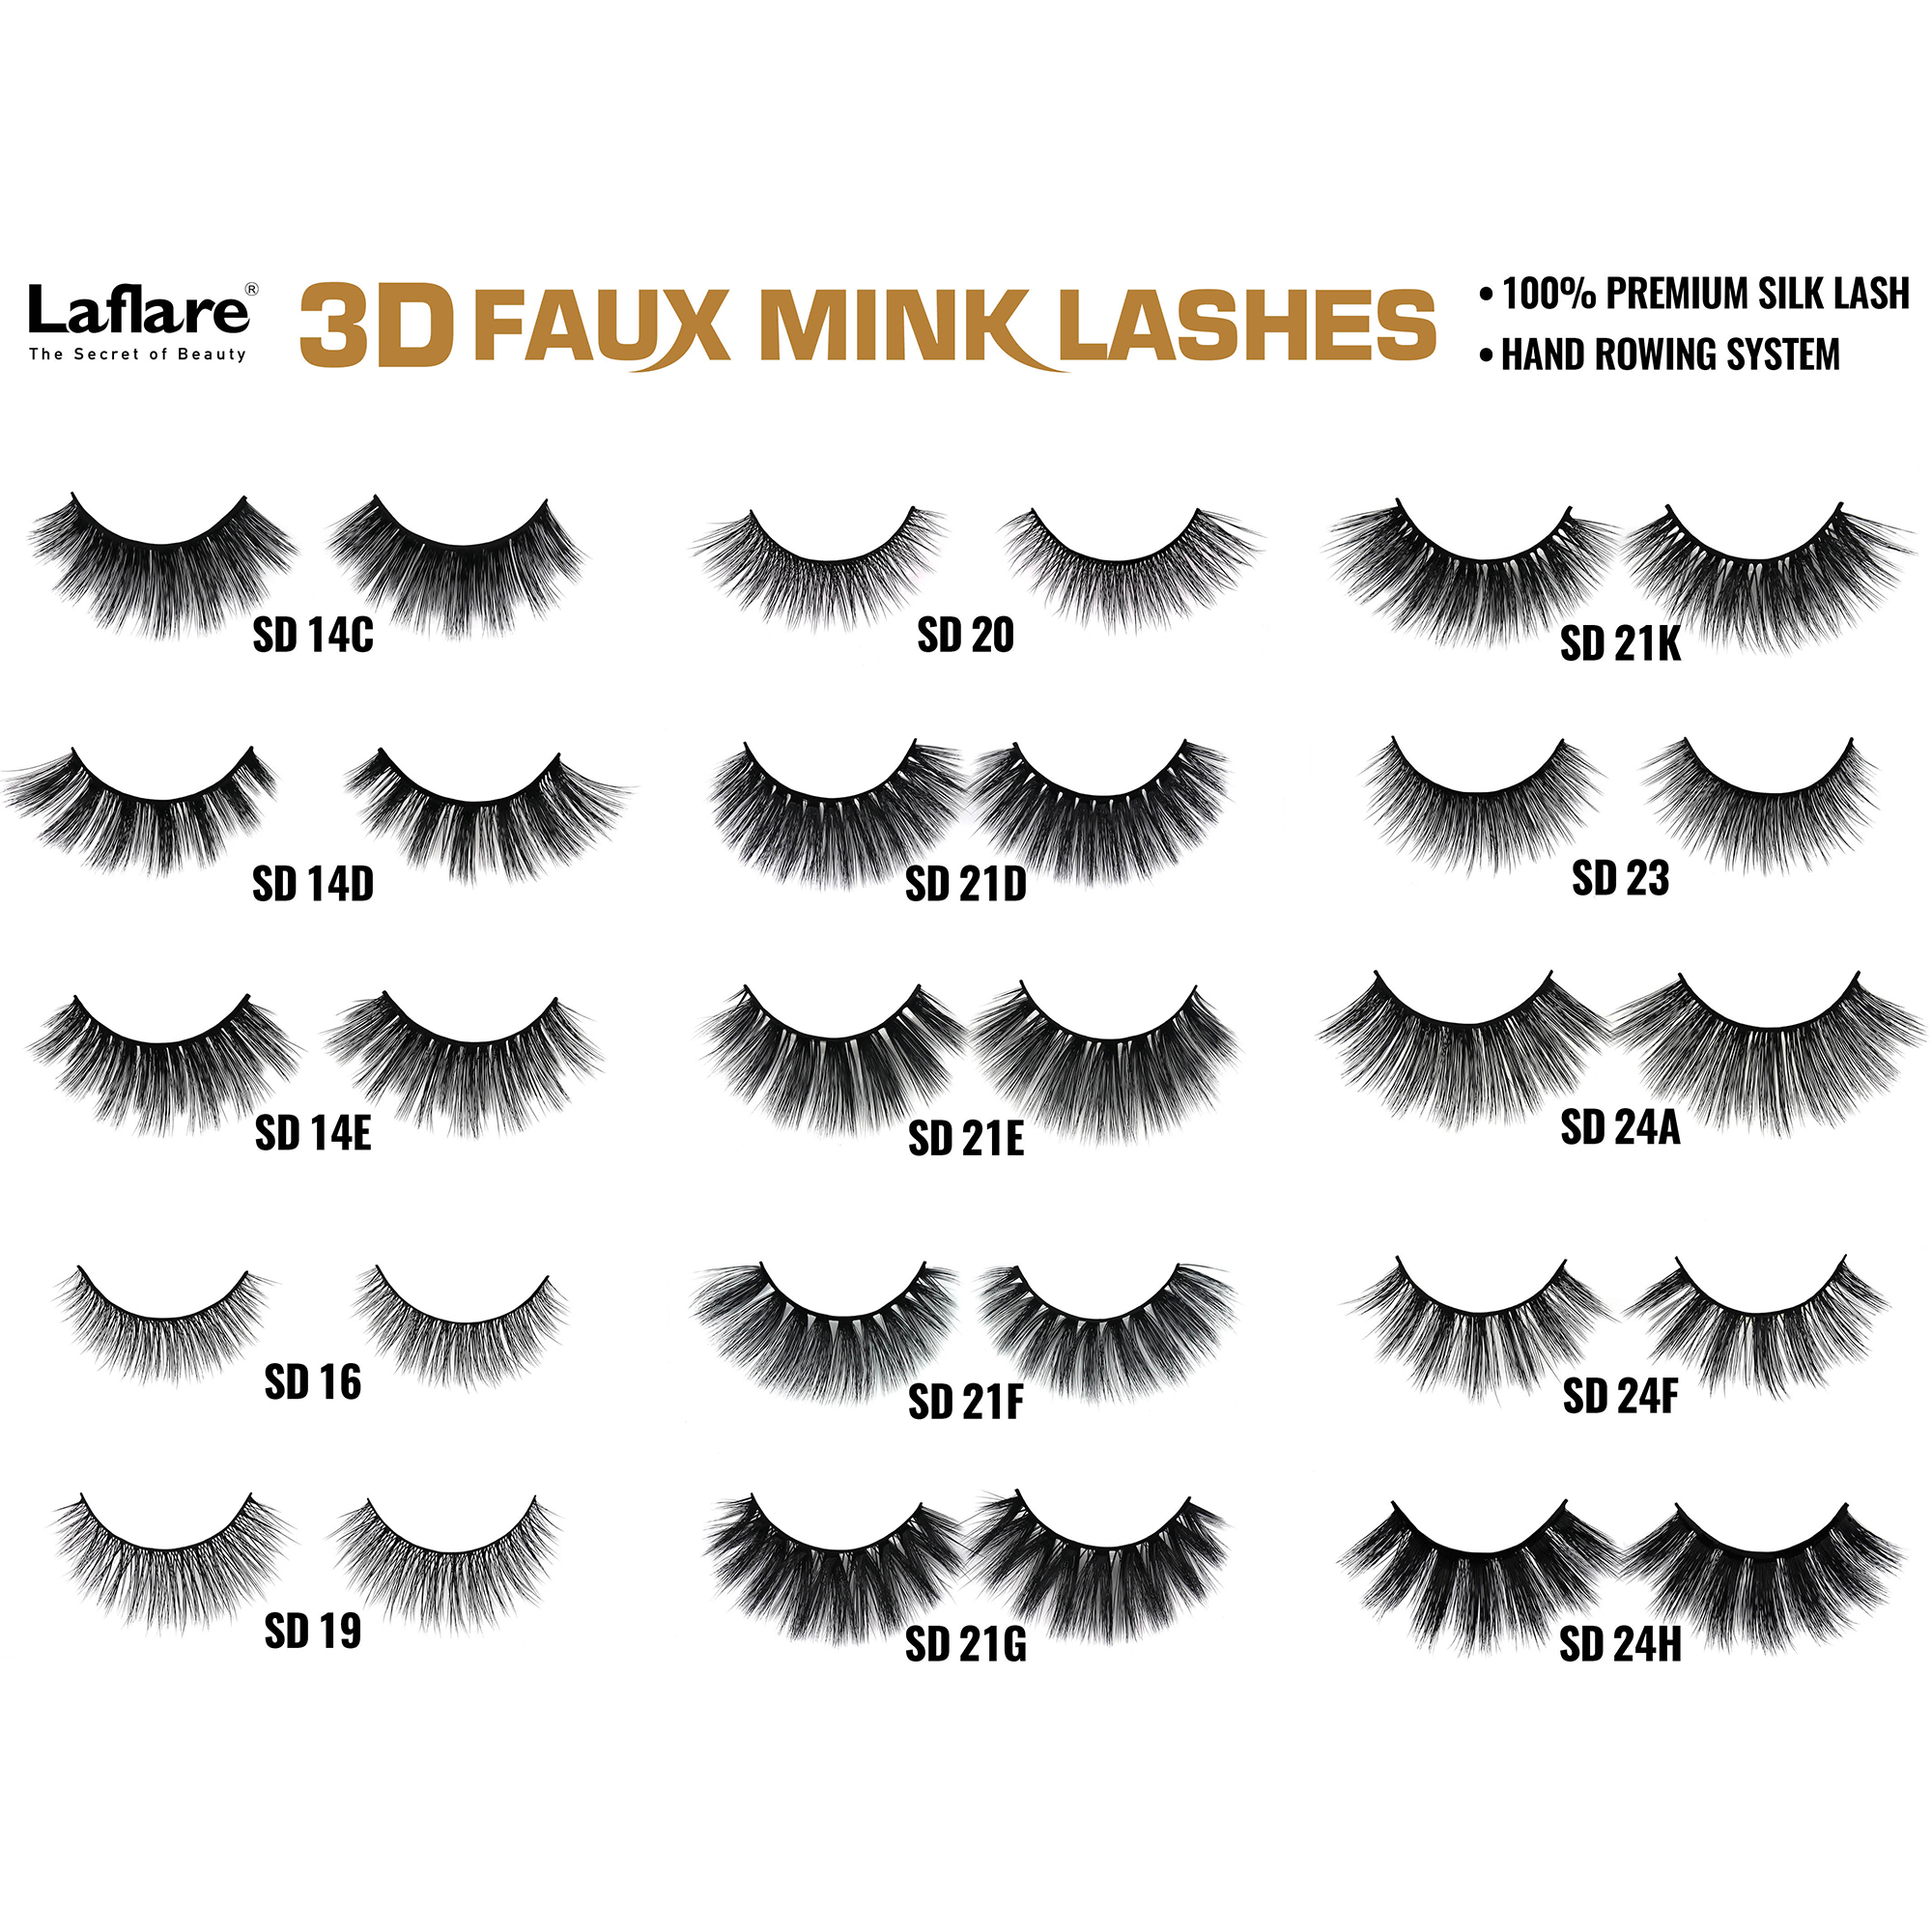 LAFLARE 3d Faux Mink Lashes - SD09E